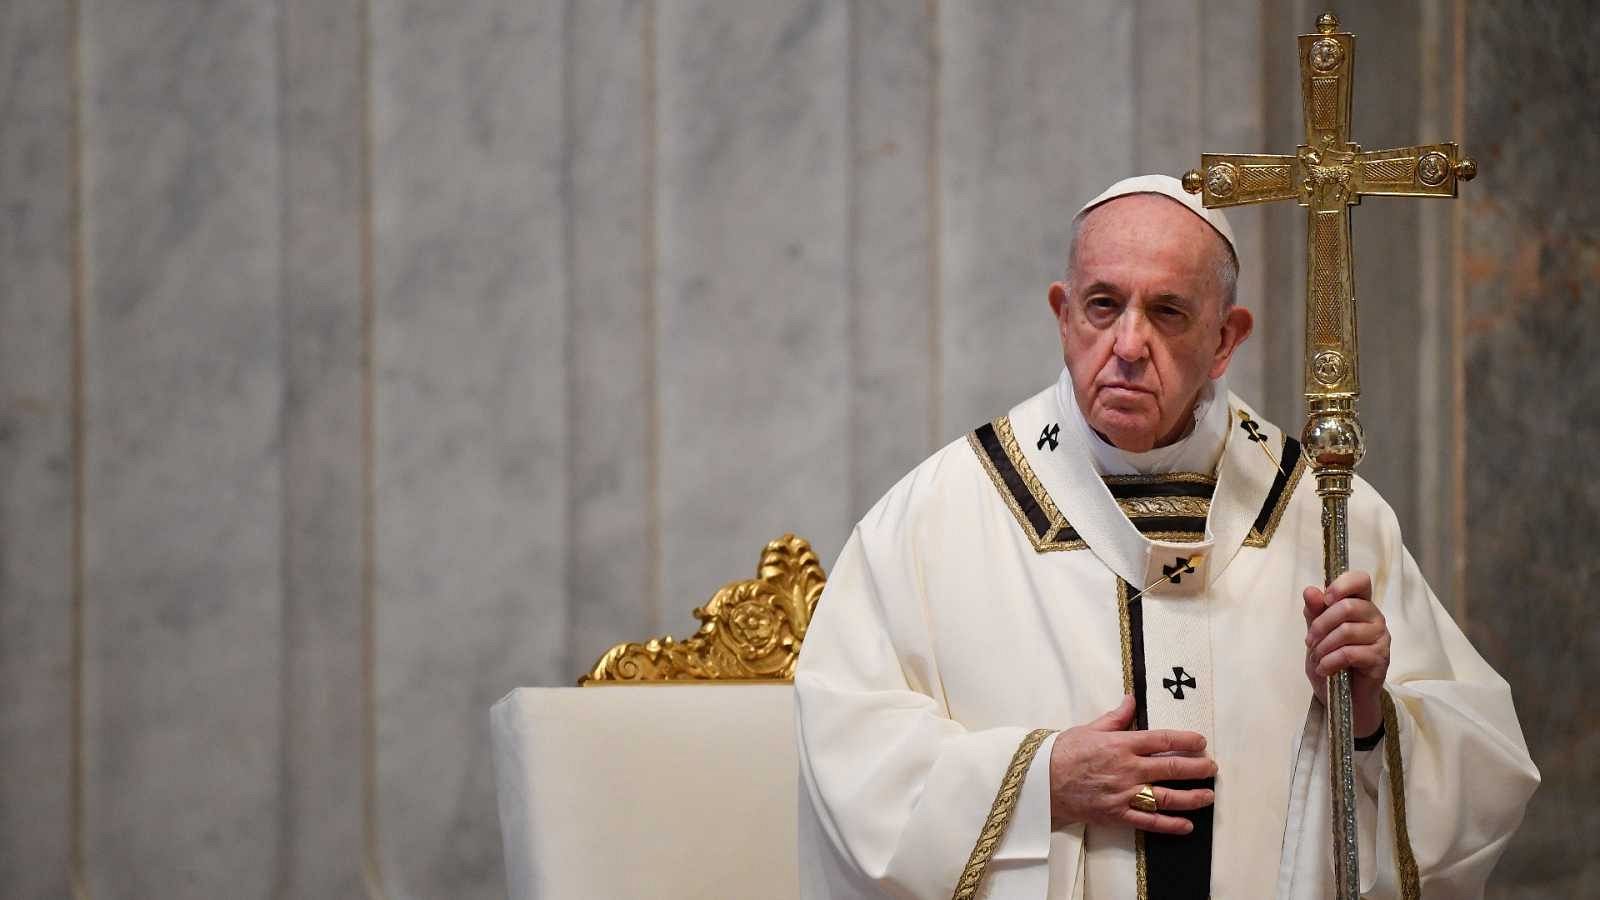 14 Horas Fin de Semana - El Papa pide un reparto justo de las vacunas  - Escuchar ahora